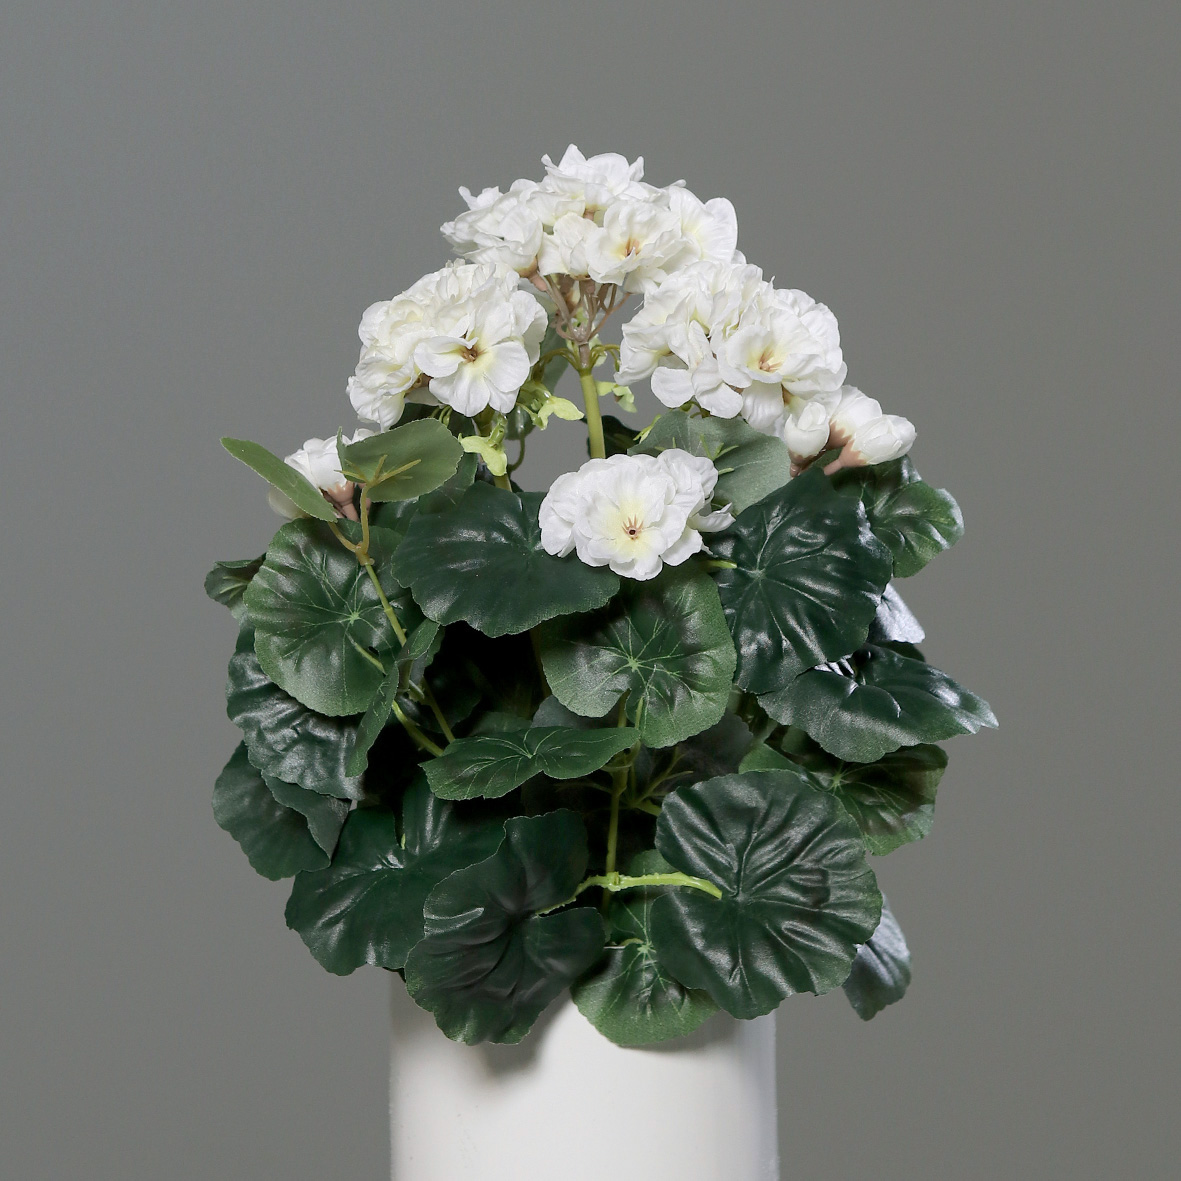 Geranie 36x28cm weiß -ohne Topf- DP Kunstpflanzen künstliche Blumen Pflanzen Kunstblumen